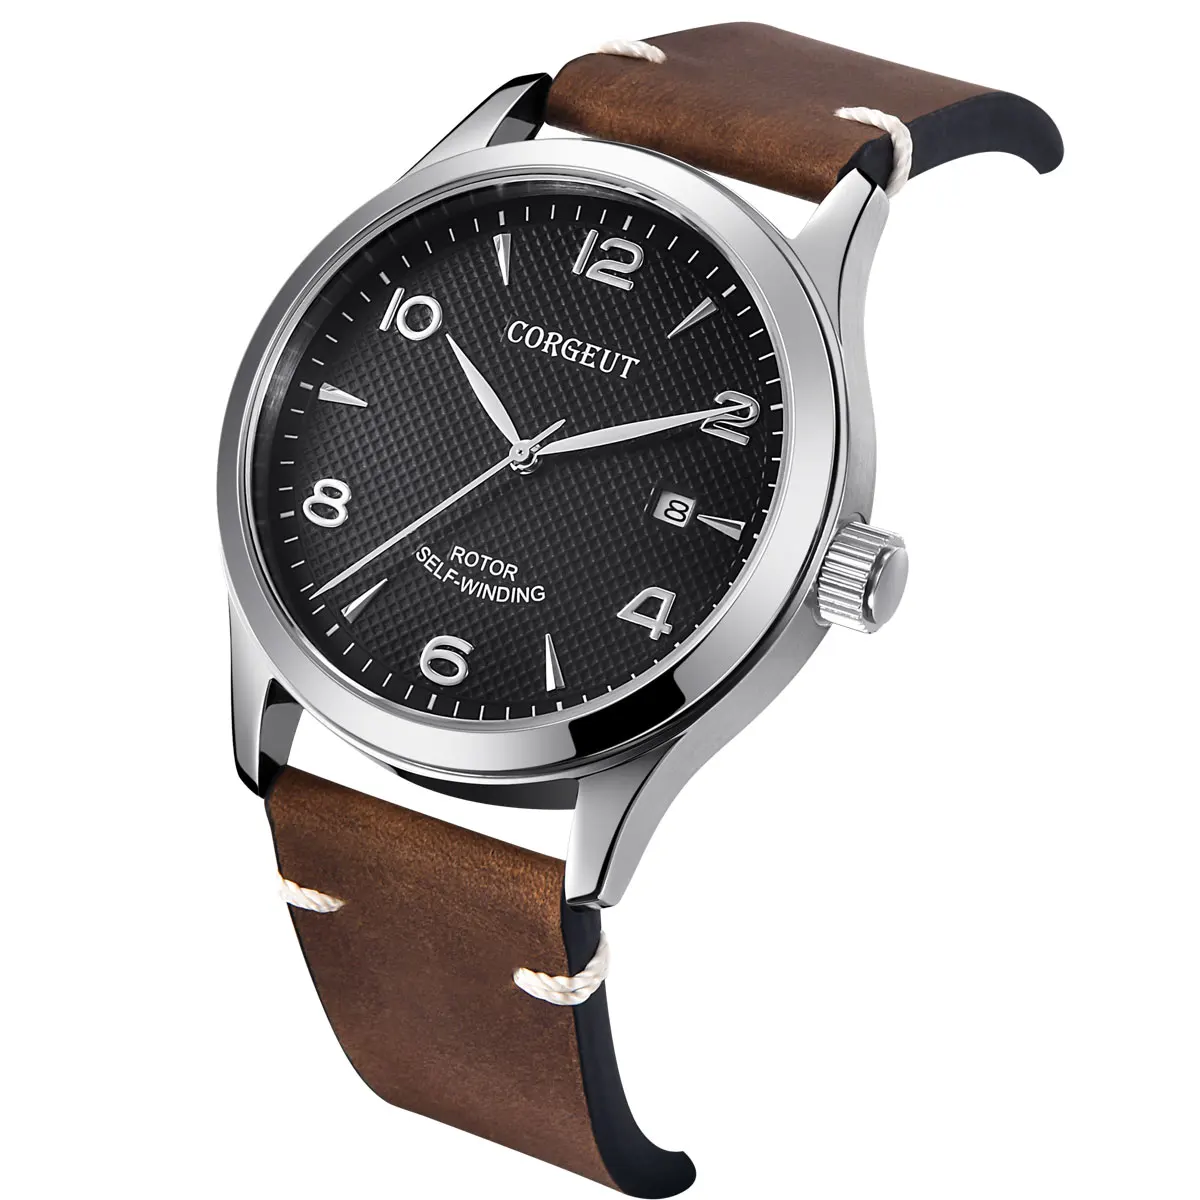 42 мм Corgeut автоматические мужские часы сапфировое стекло черный циферблат Дата механический кожаный ремешок мужские часы